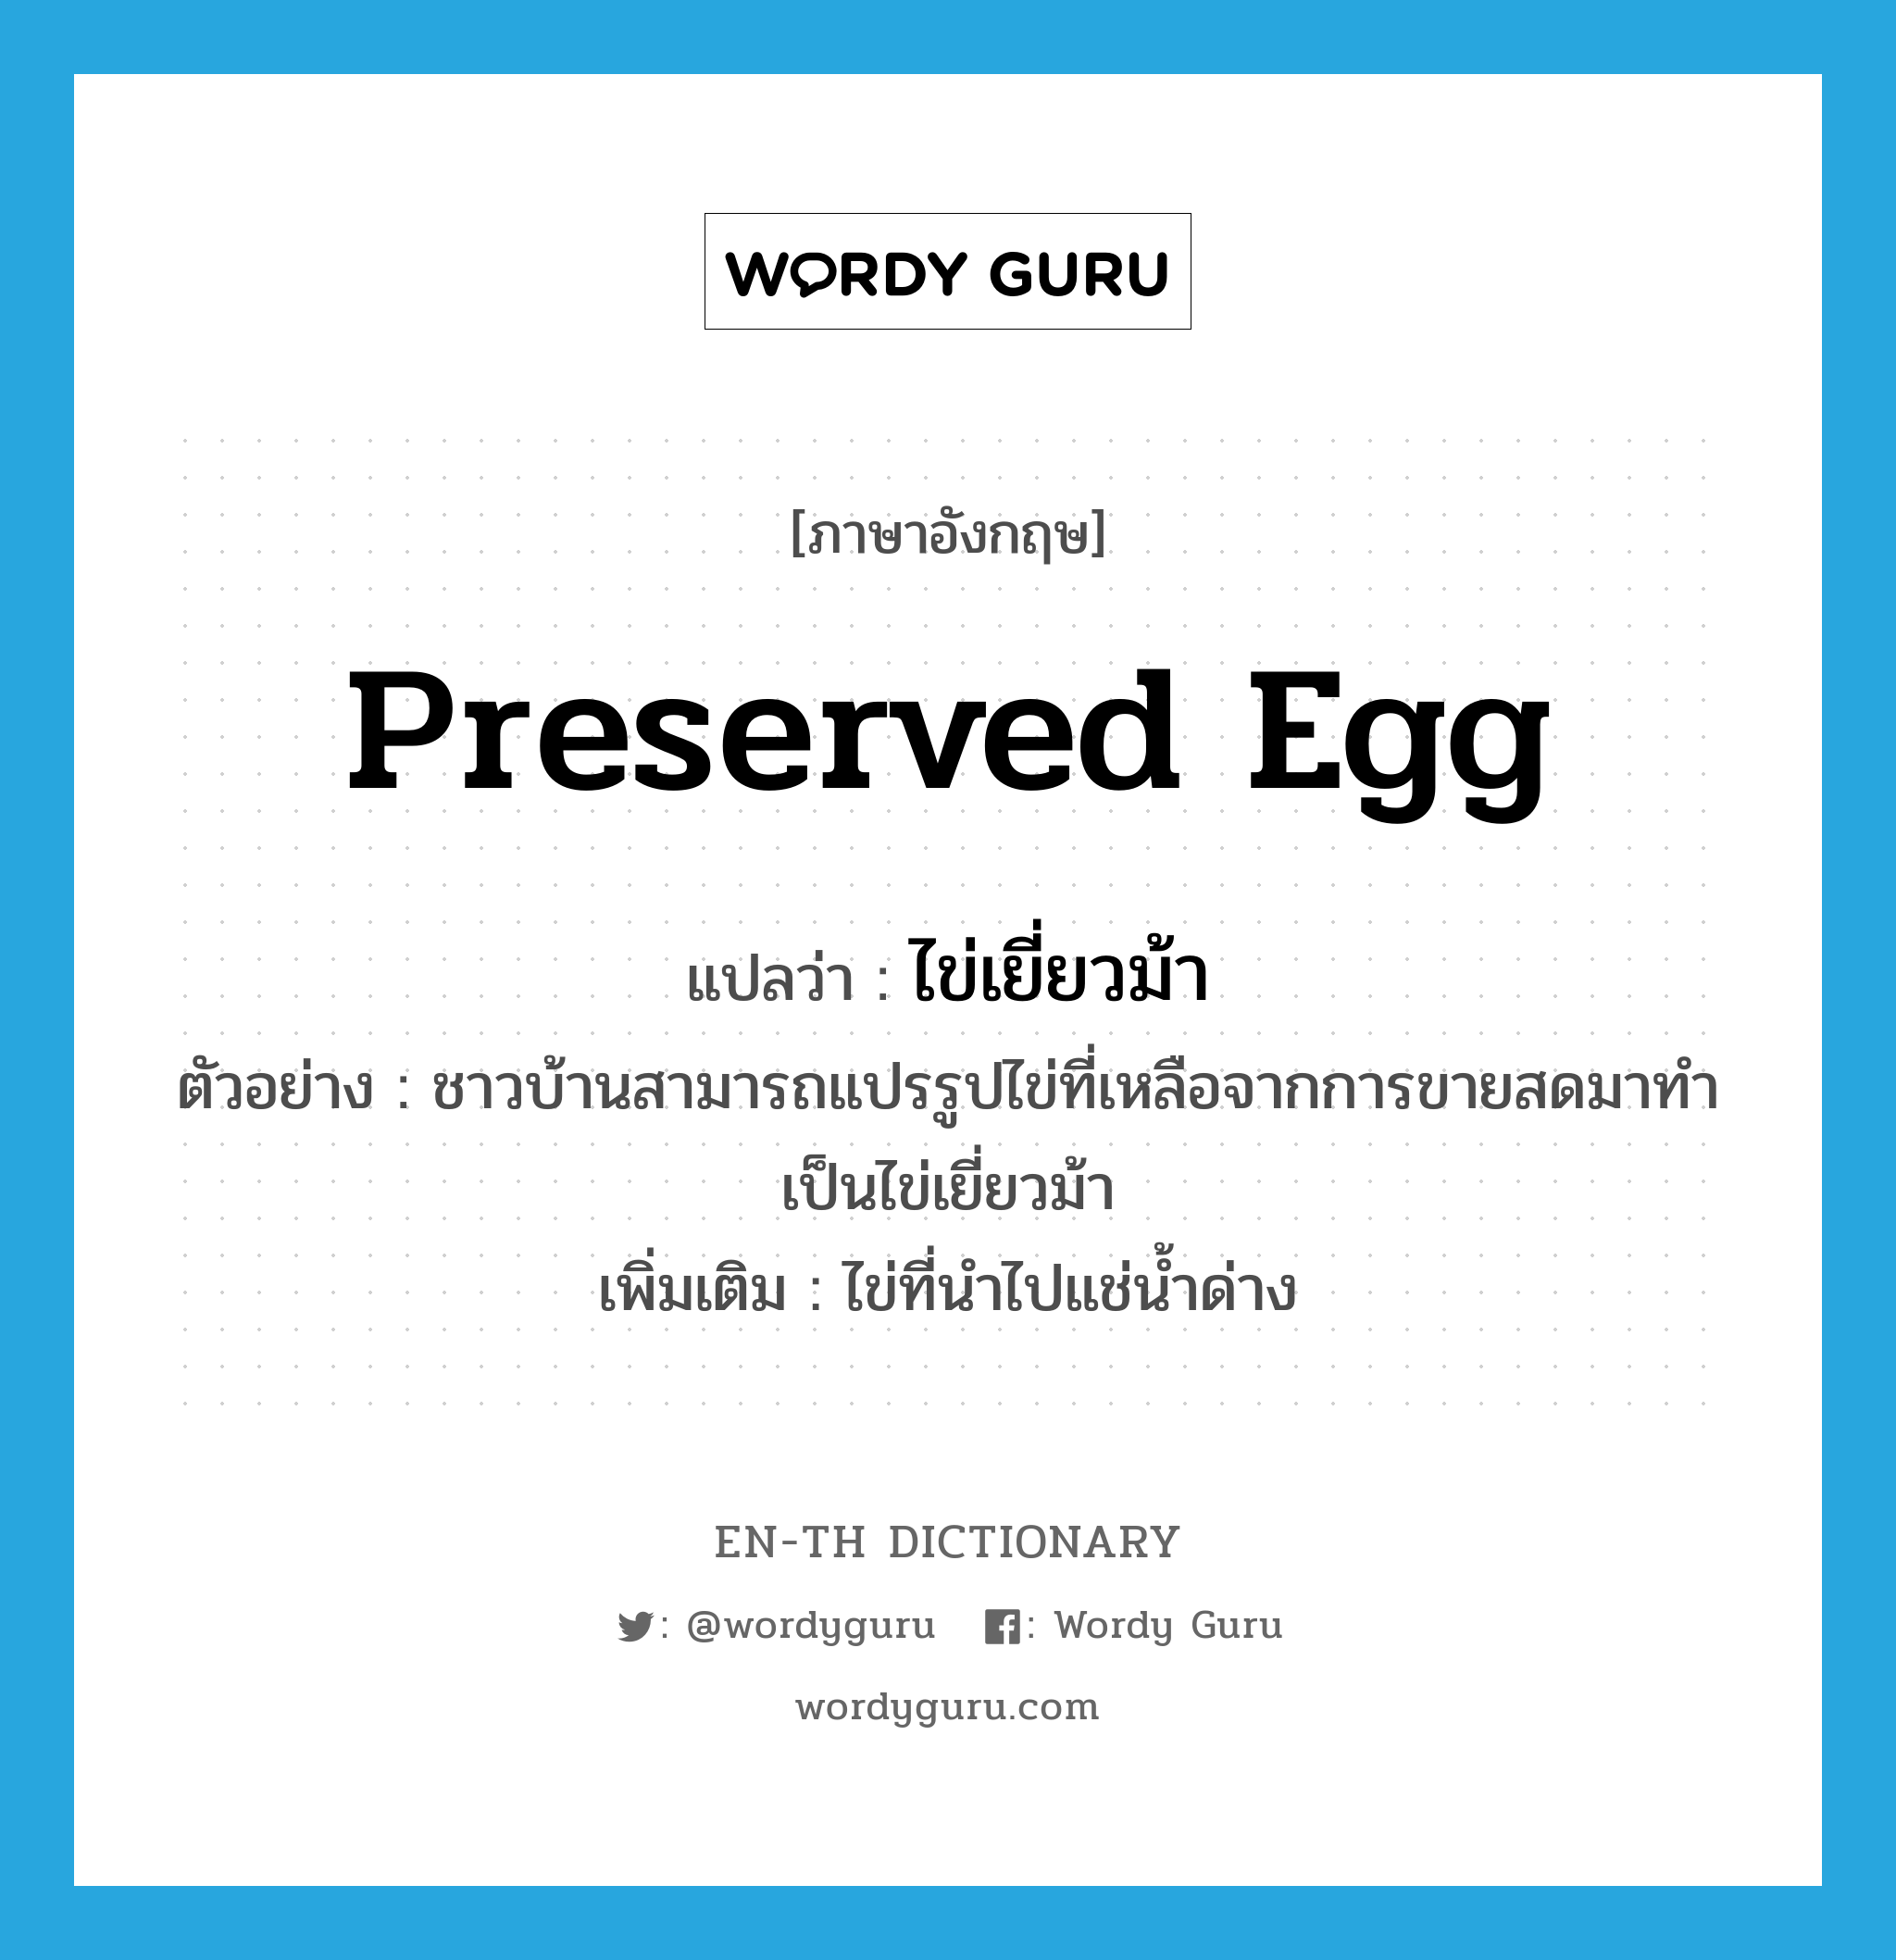 ไข่เยี่ยวม้า ภาษาอังกฤษ?, คำศัพท์ภาษาอังกฤษ ไข่เยี่ยวม้า แปลว่า preserved egg ประเภท N ตัวอย่าง ชาวบ้านสามารถแปรรูปไข่ที่เหลือจากการขายสดมาทำเป็นไข่เยี่ยวม้า เพิ่มเติม ไข่ที่นำไปแช่น้ำด่าง หมวด N